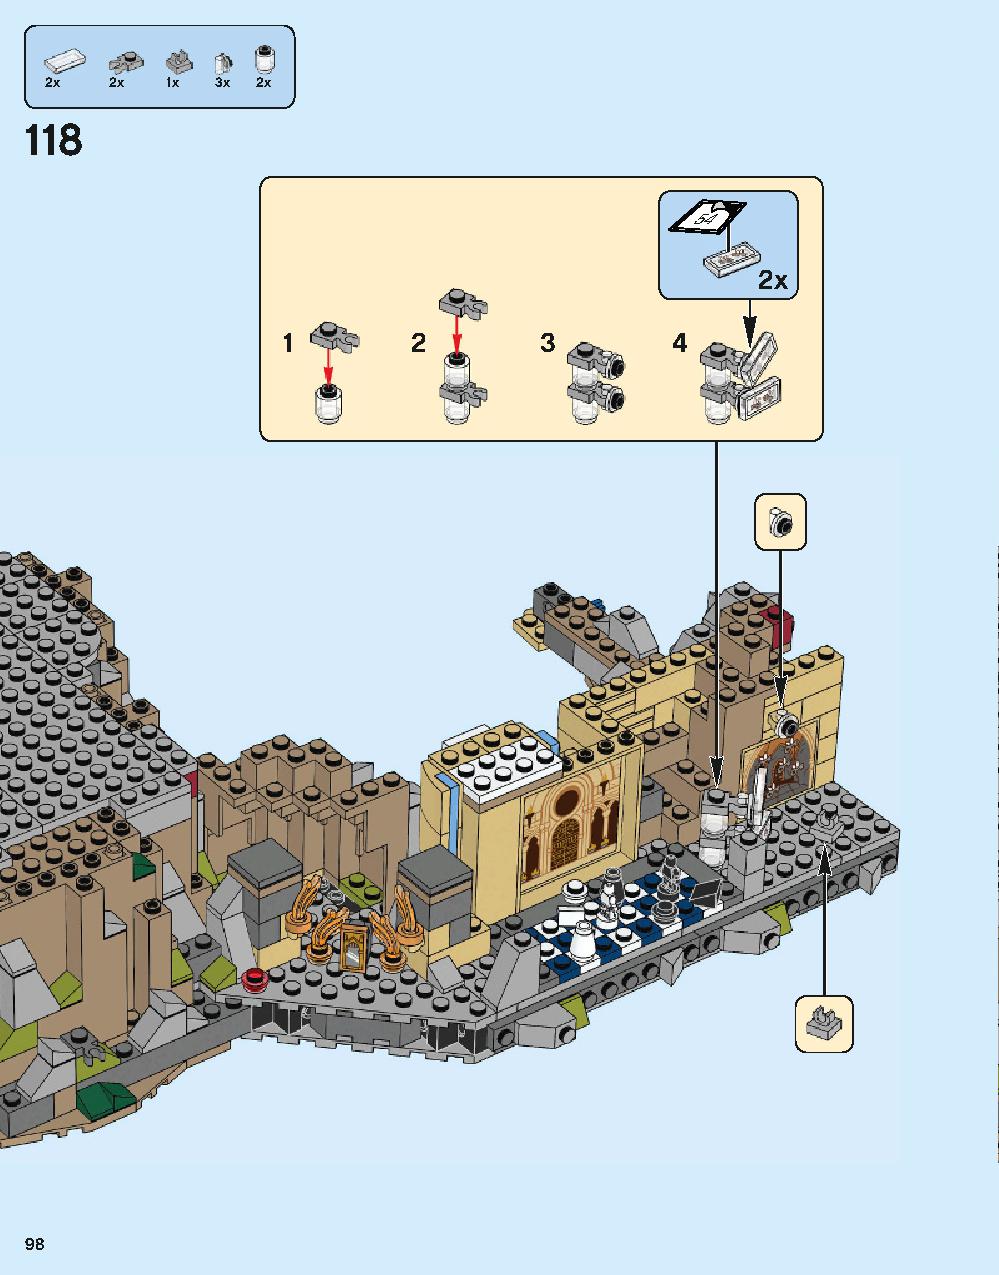 ホグワーツ城 71043 レゴの商品情報 レゴの説明書・組立方法 98 page